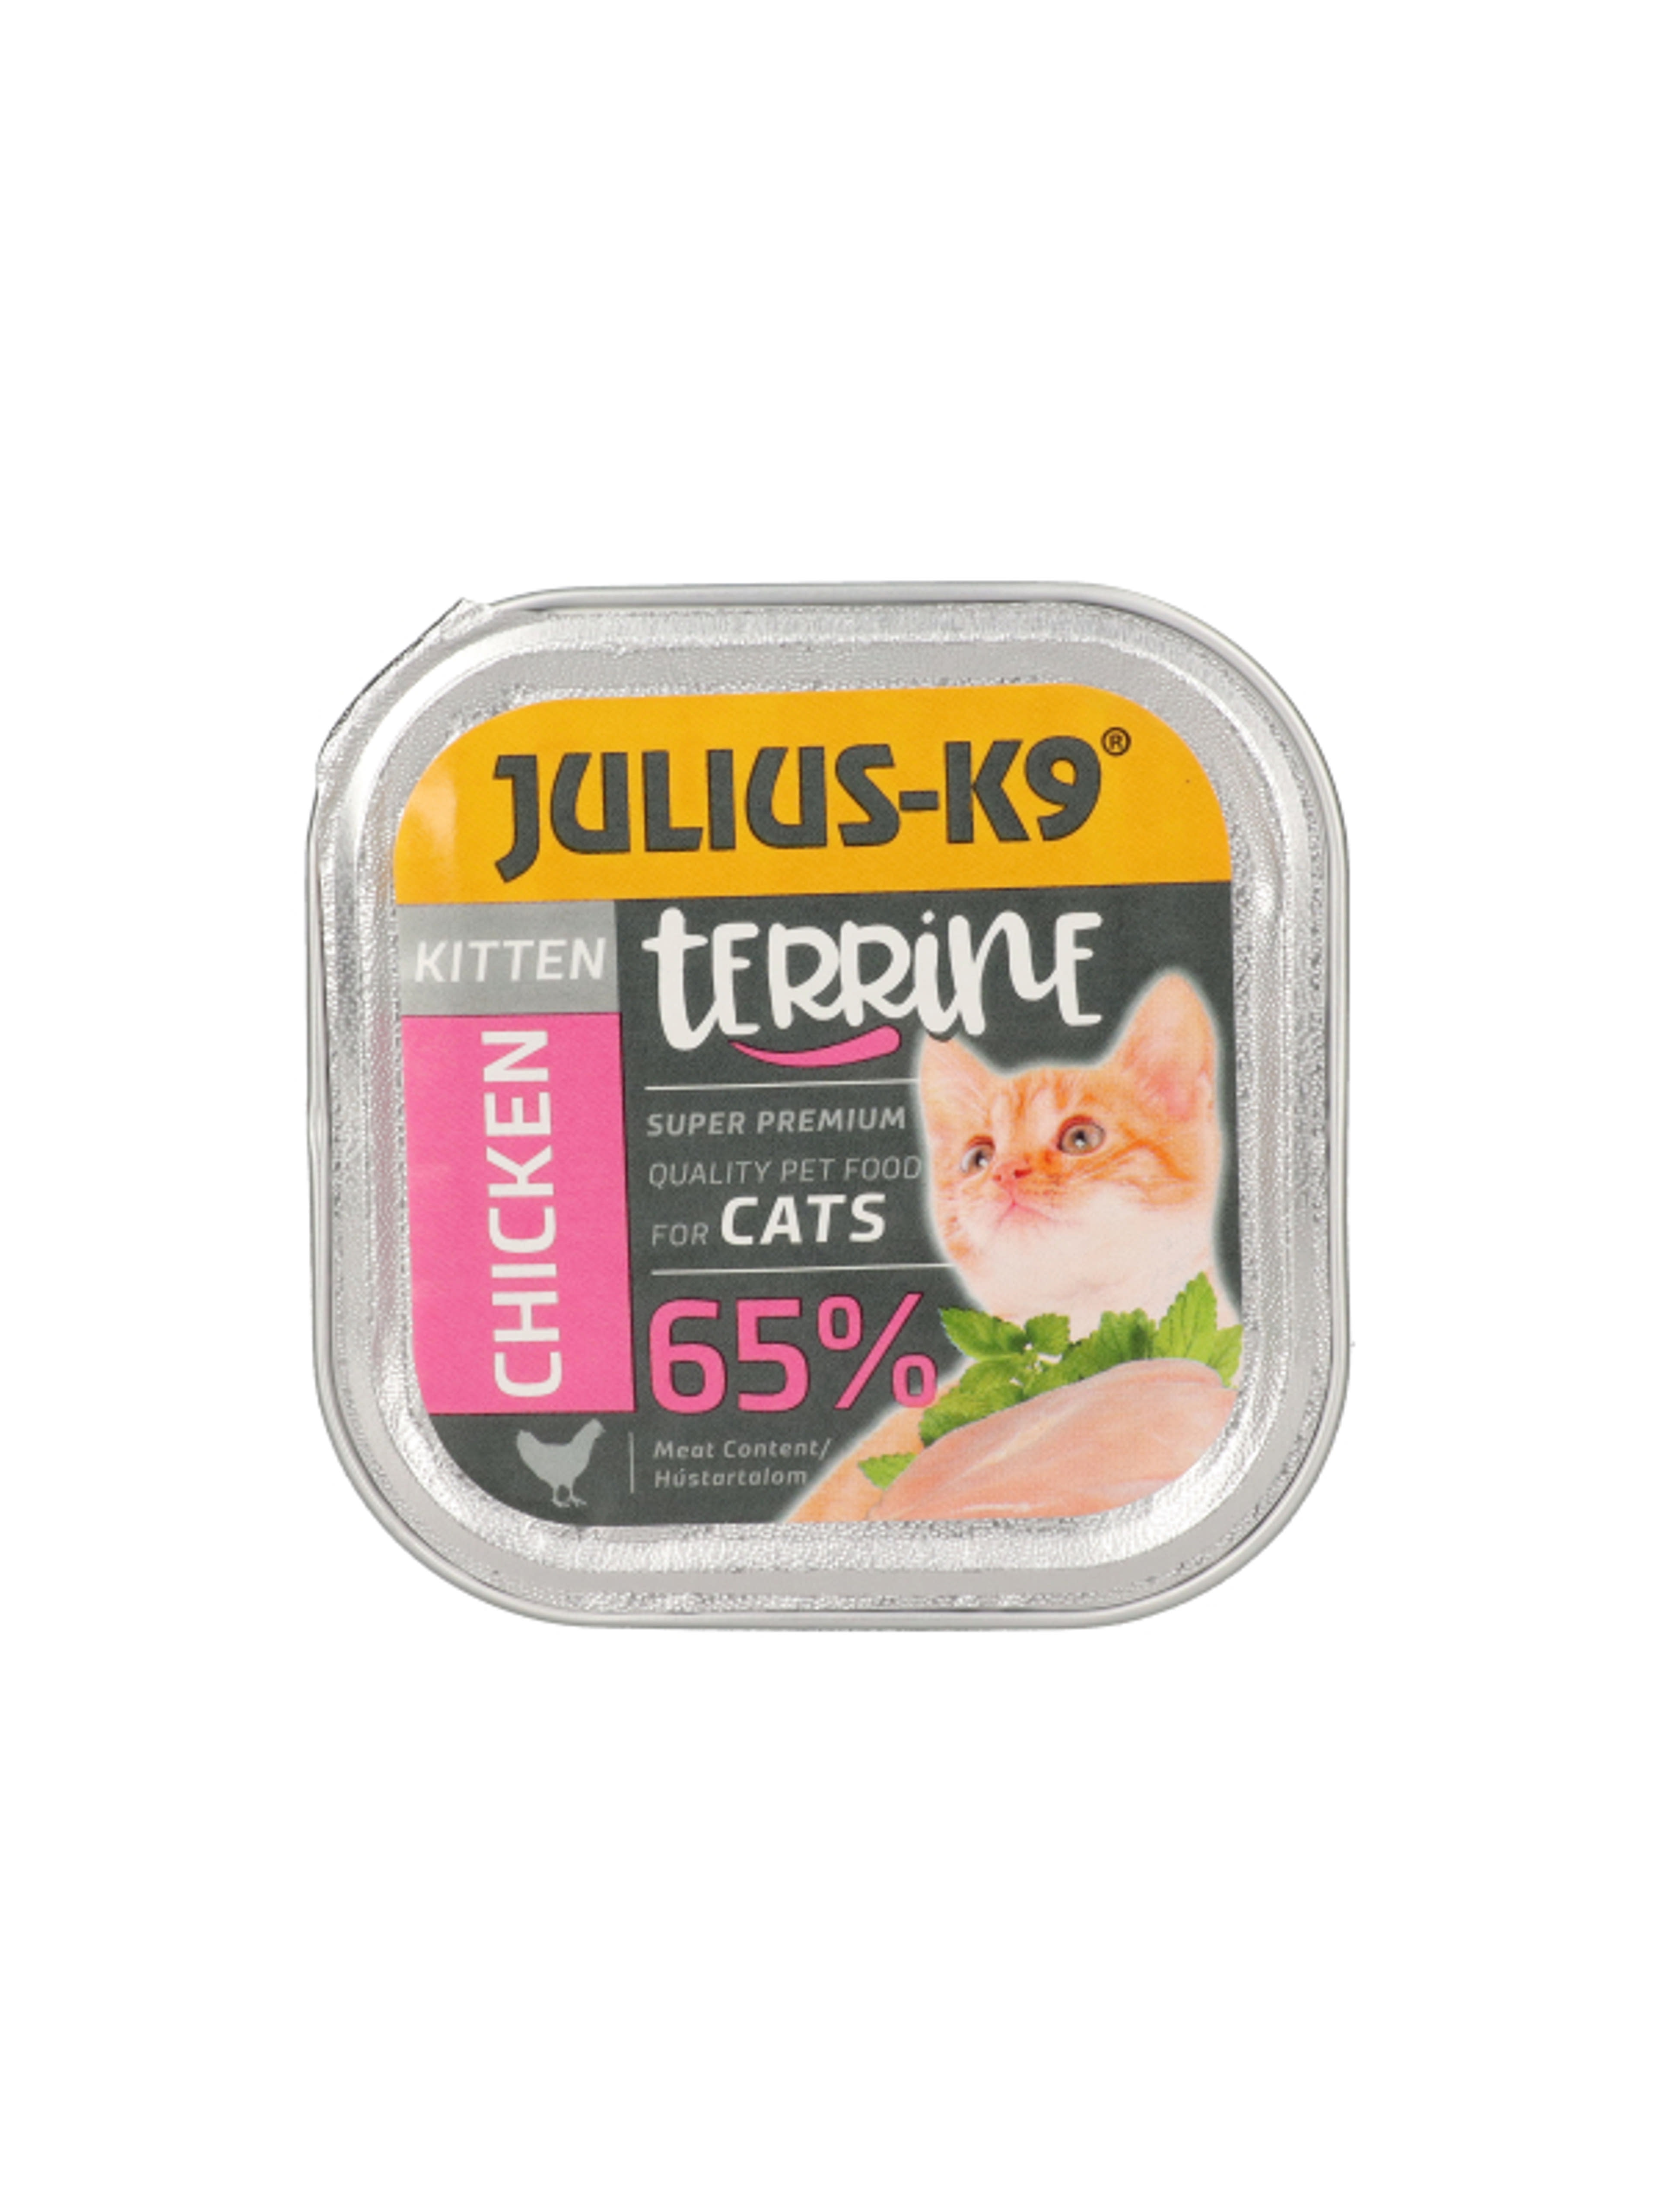 Julis-K9 alutál macskáknak, kitten csirke - 100 g